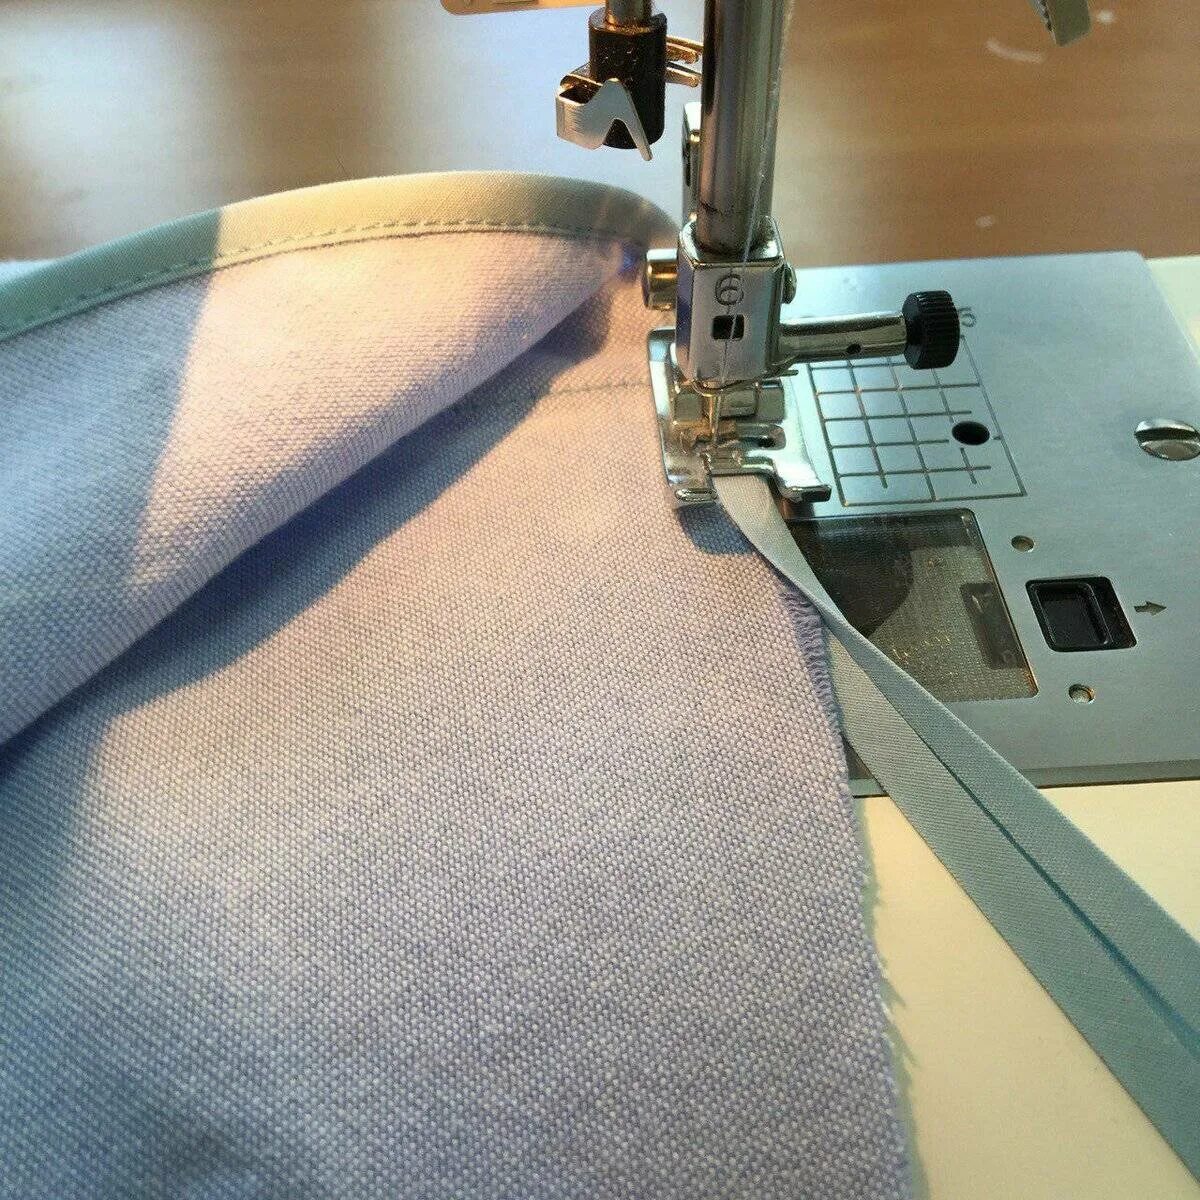 Место сшивает. Обработать край трикотажа без оверлока. Обработать края ткани на машинке. Обработка срезов без оверлока. Подгибка низа платья.